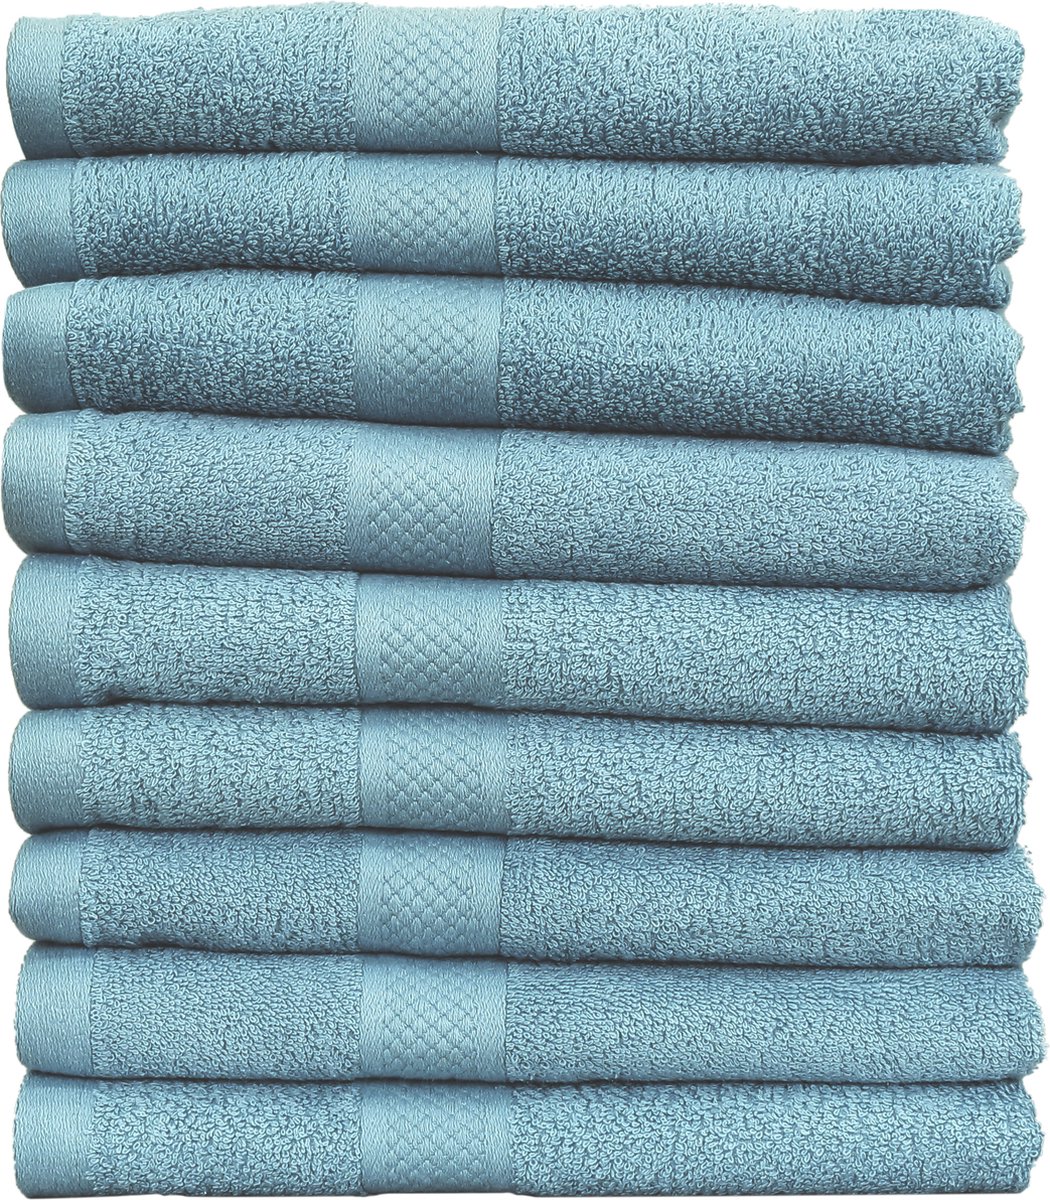 Handdoek Hotel Collectie - 9 stuks - 50x100 - denim blauw